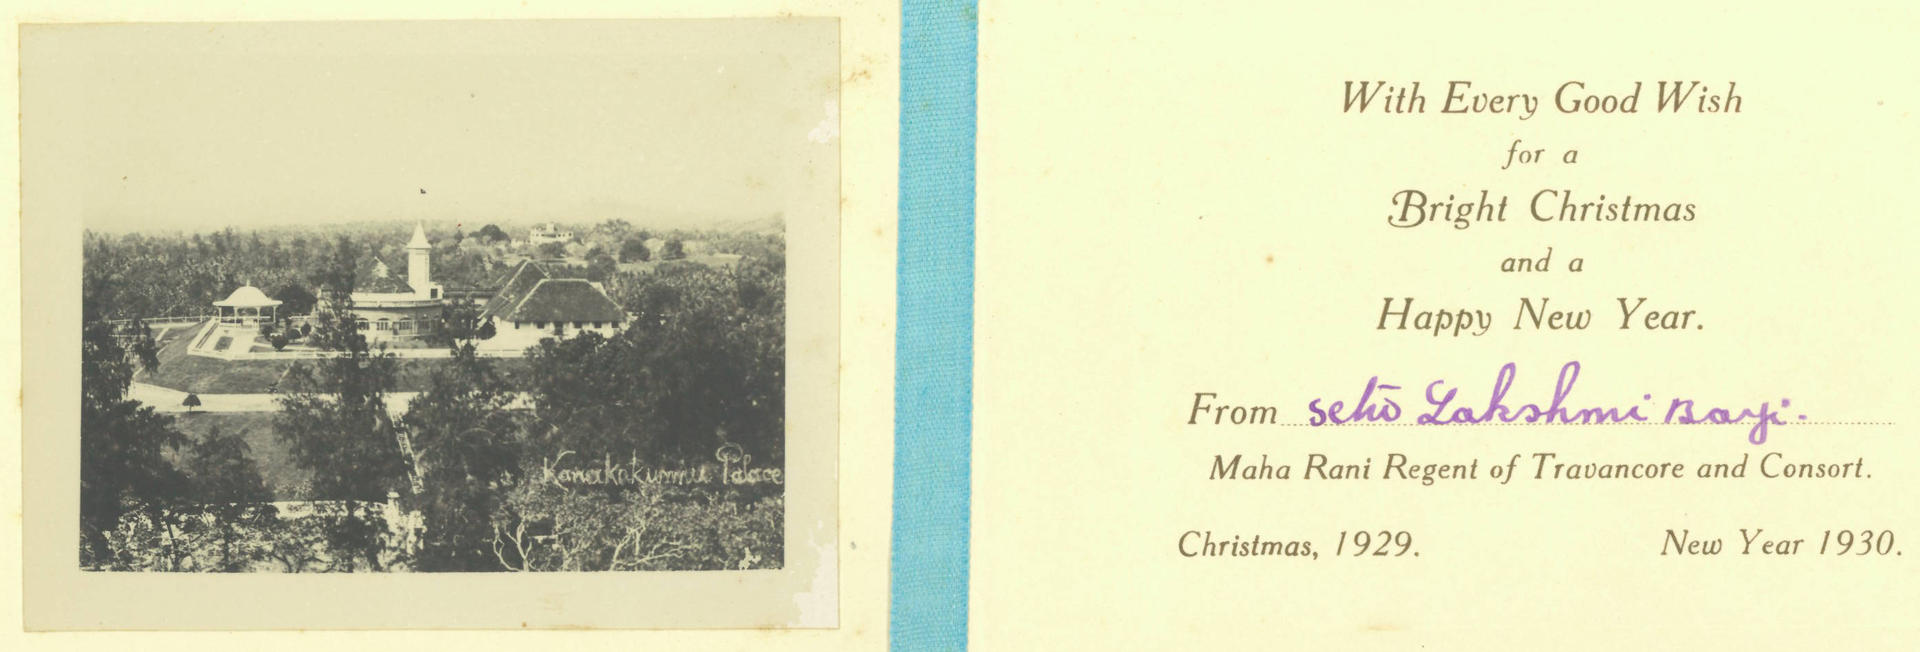 Christmas card 1930